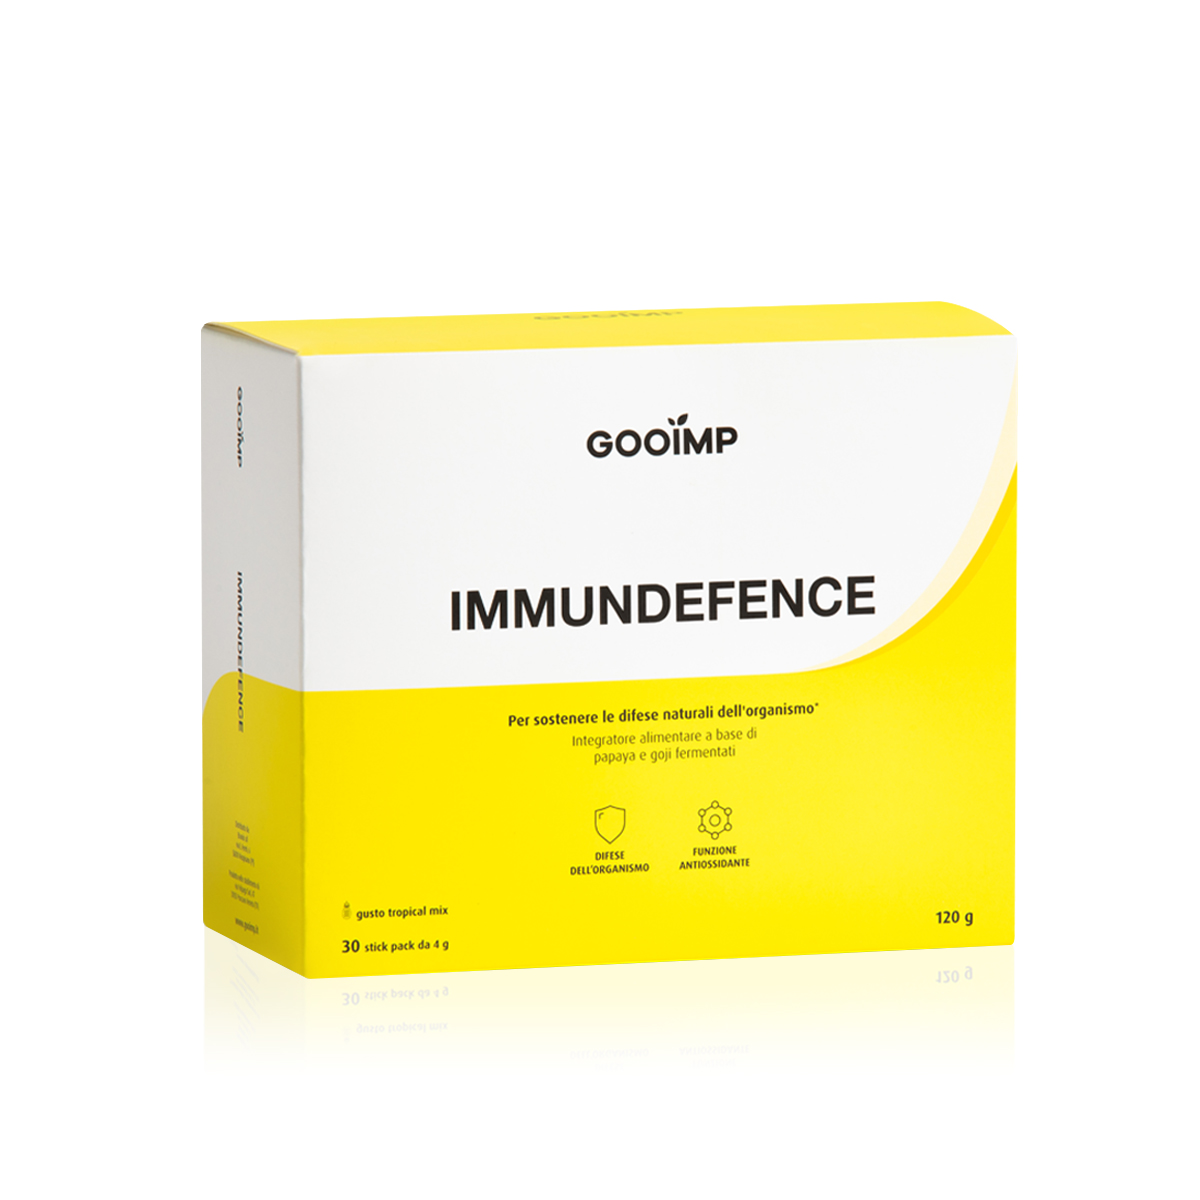 Immunodefence